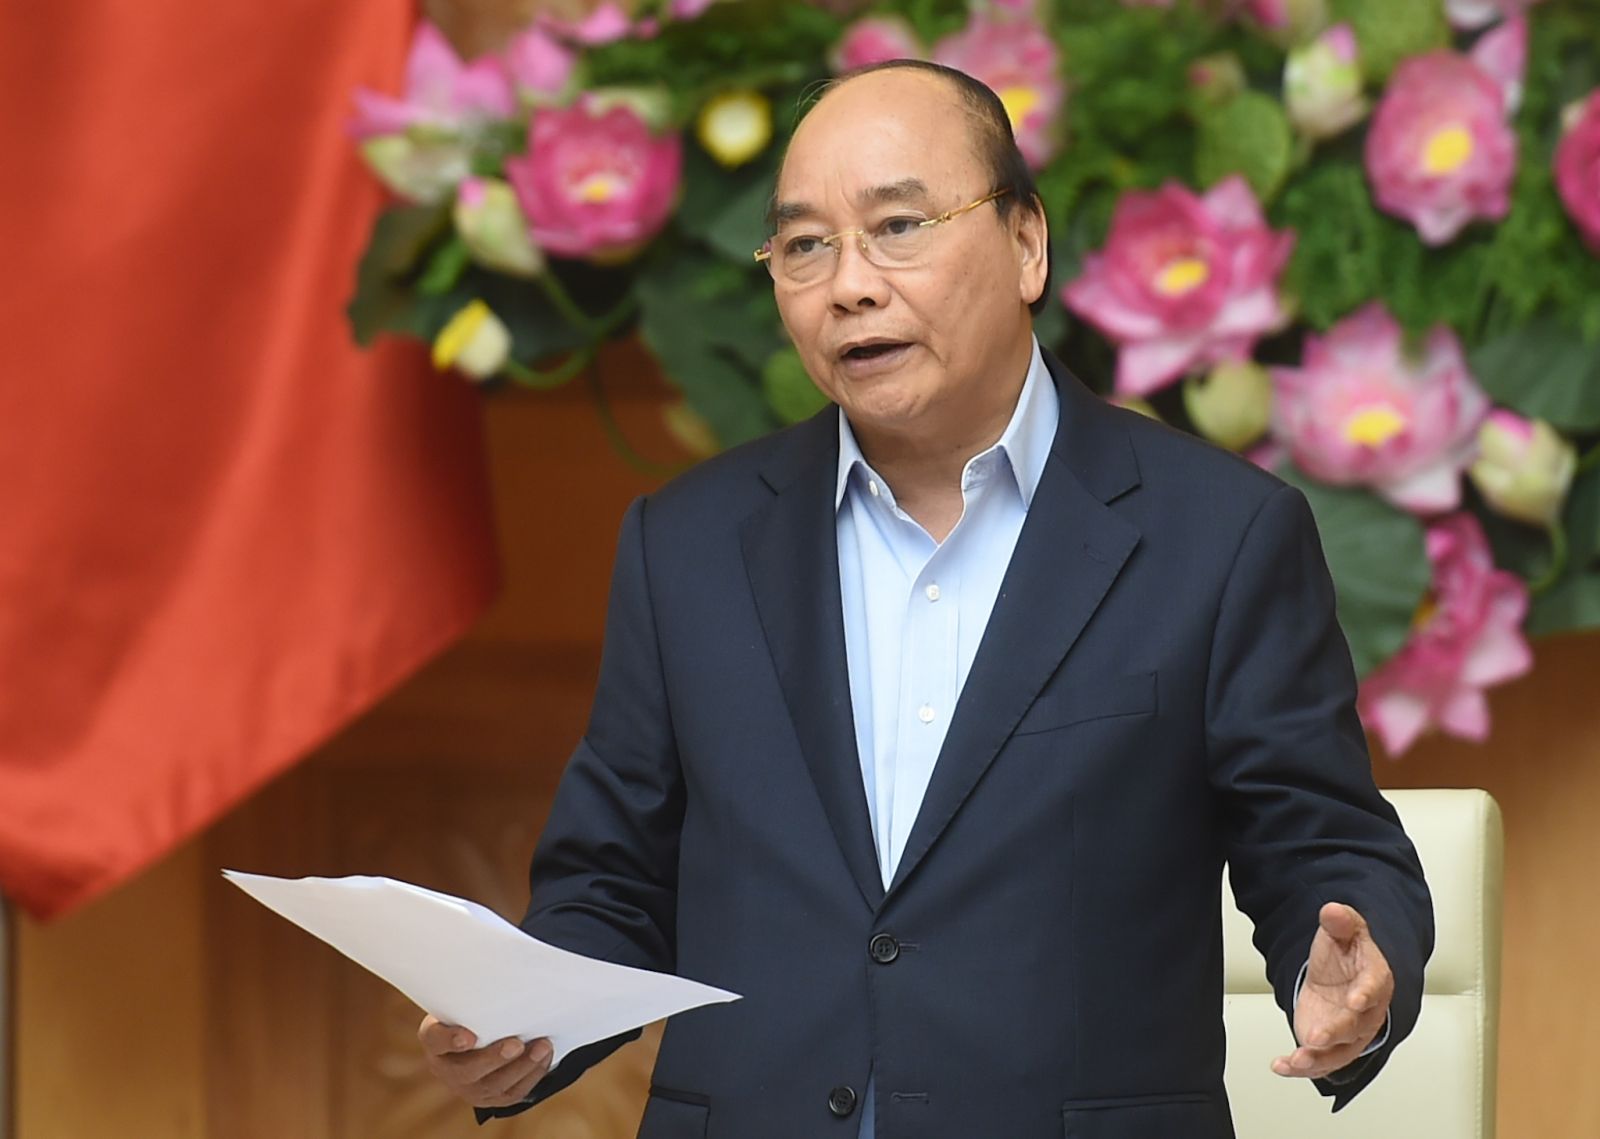 Thủ tướng Nguyễn Xuân Phúc chủ trì cuộc họp Thường trực Chính phủ về các dự án chậm tiến độ, kém hiệu quả của ngành công thương